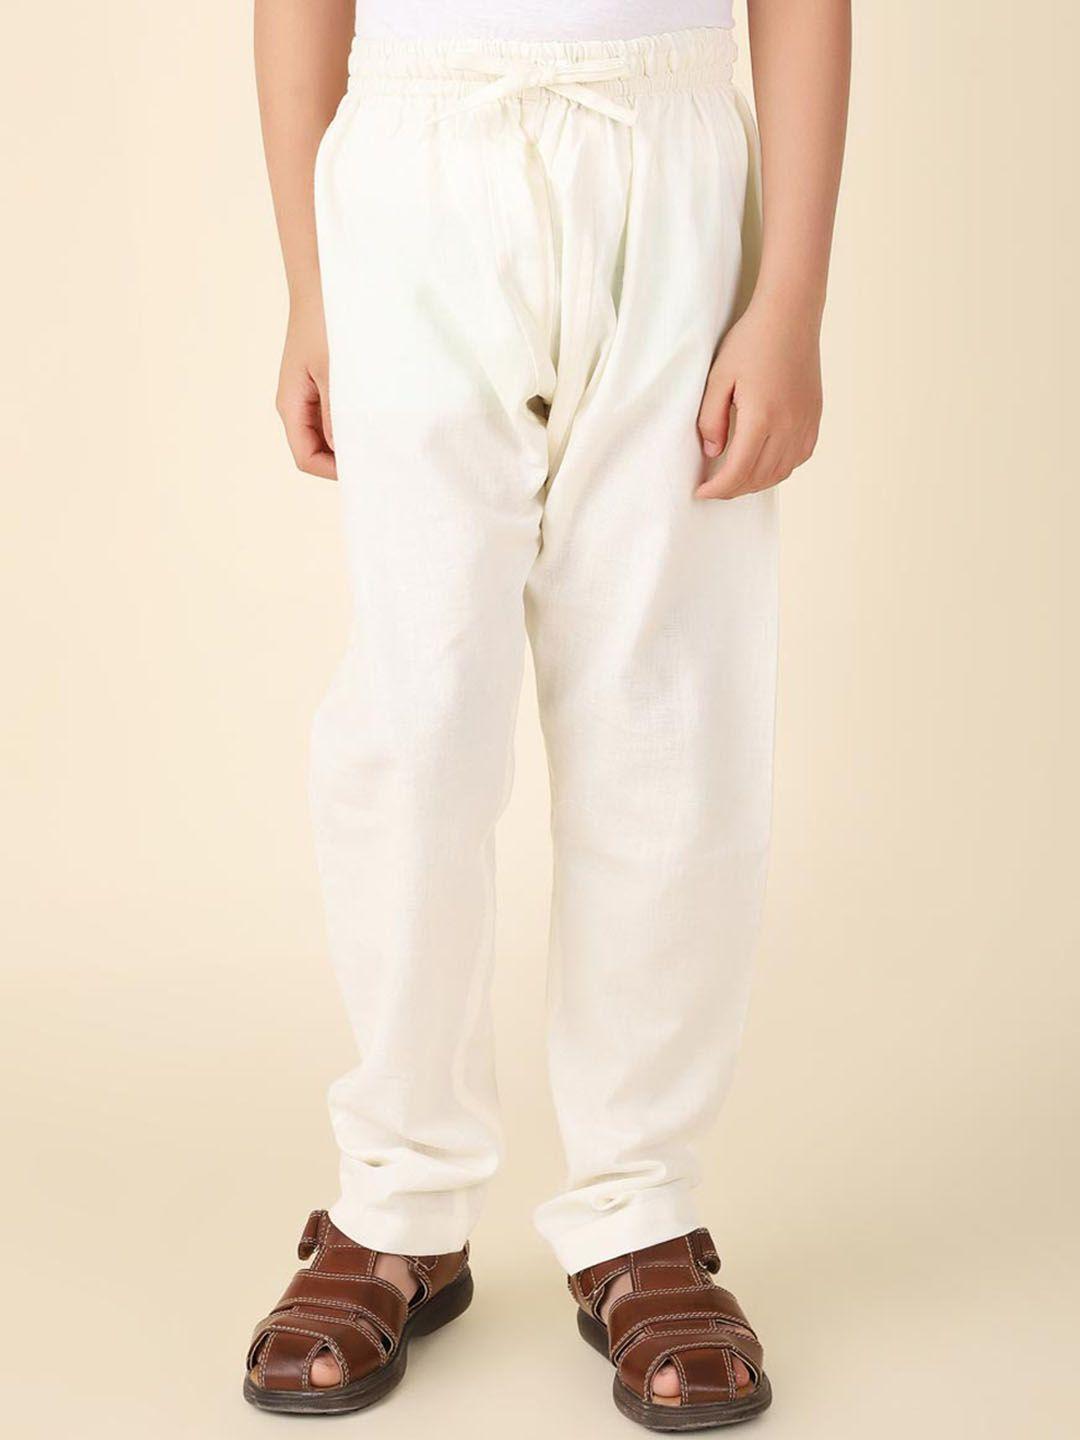 fabindia-boys-mid-rise-cotton-pyjamas